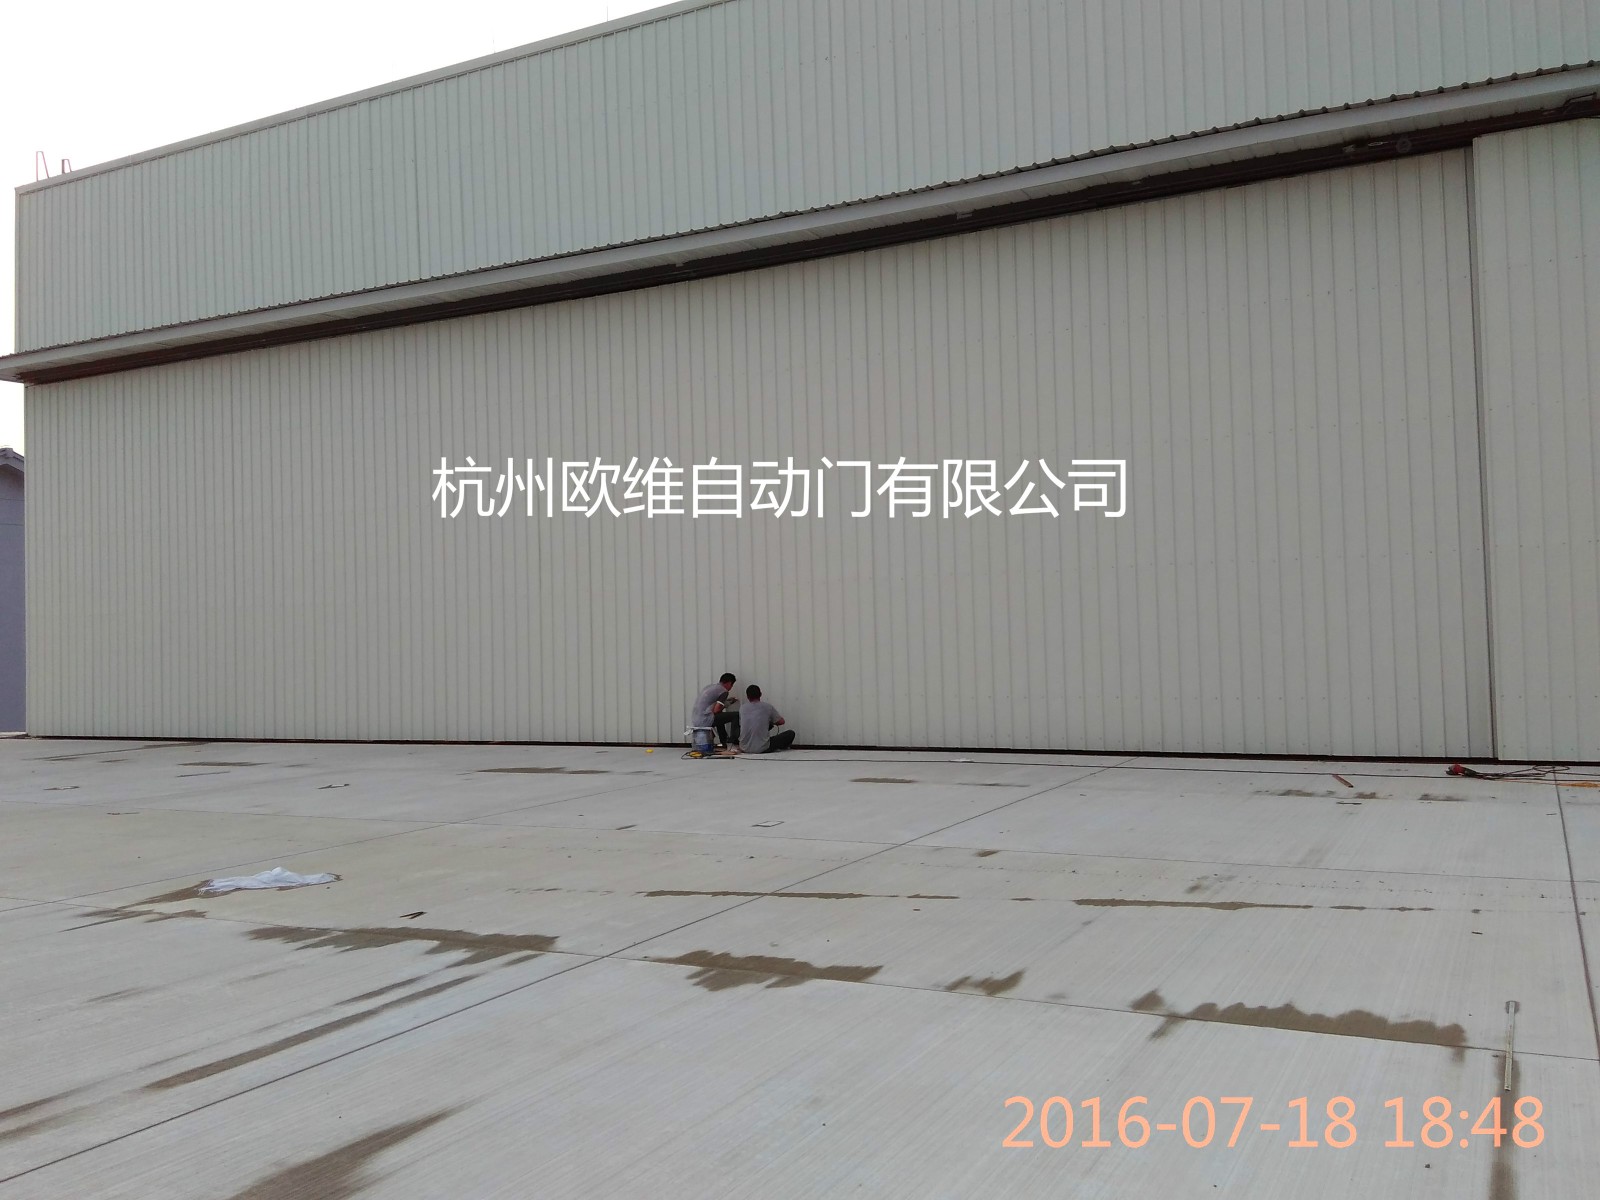 杭州机库门生产安装